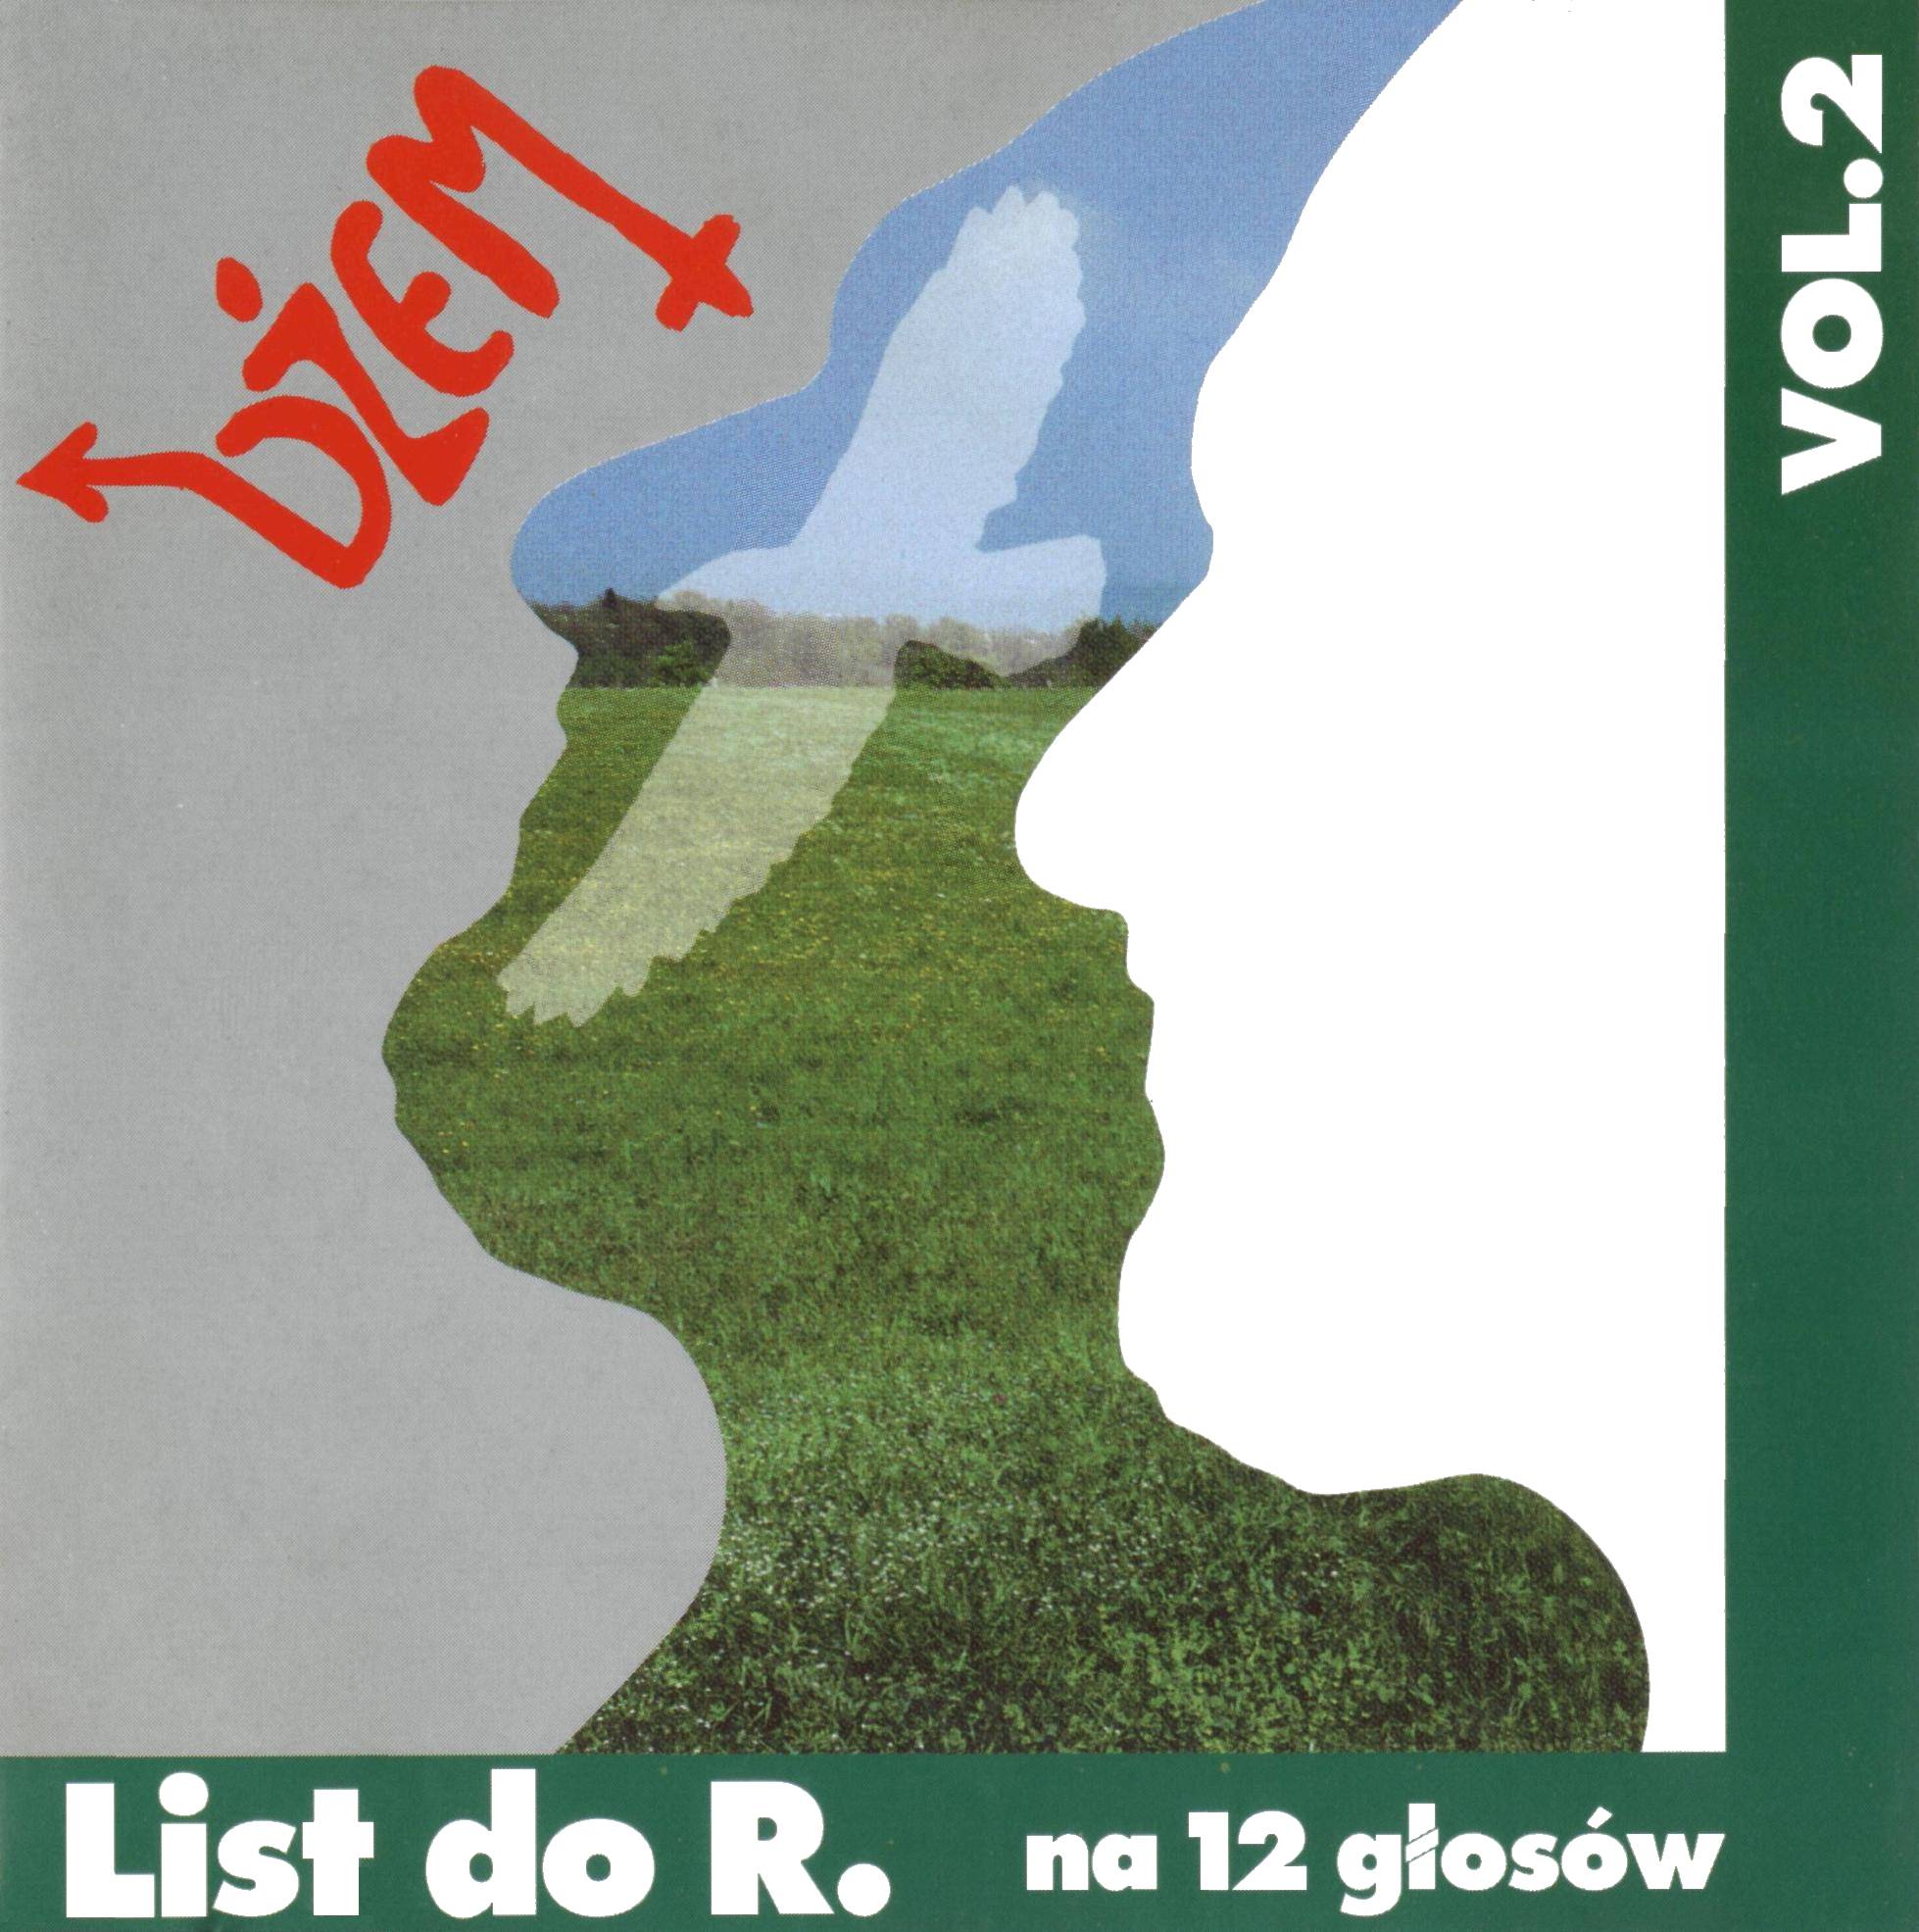 19. LIST DO R. NA 12 GŁOSÓW VOL. 2 1995 - cover.jpg